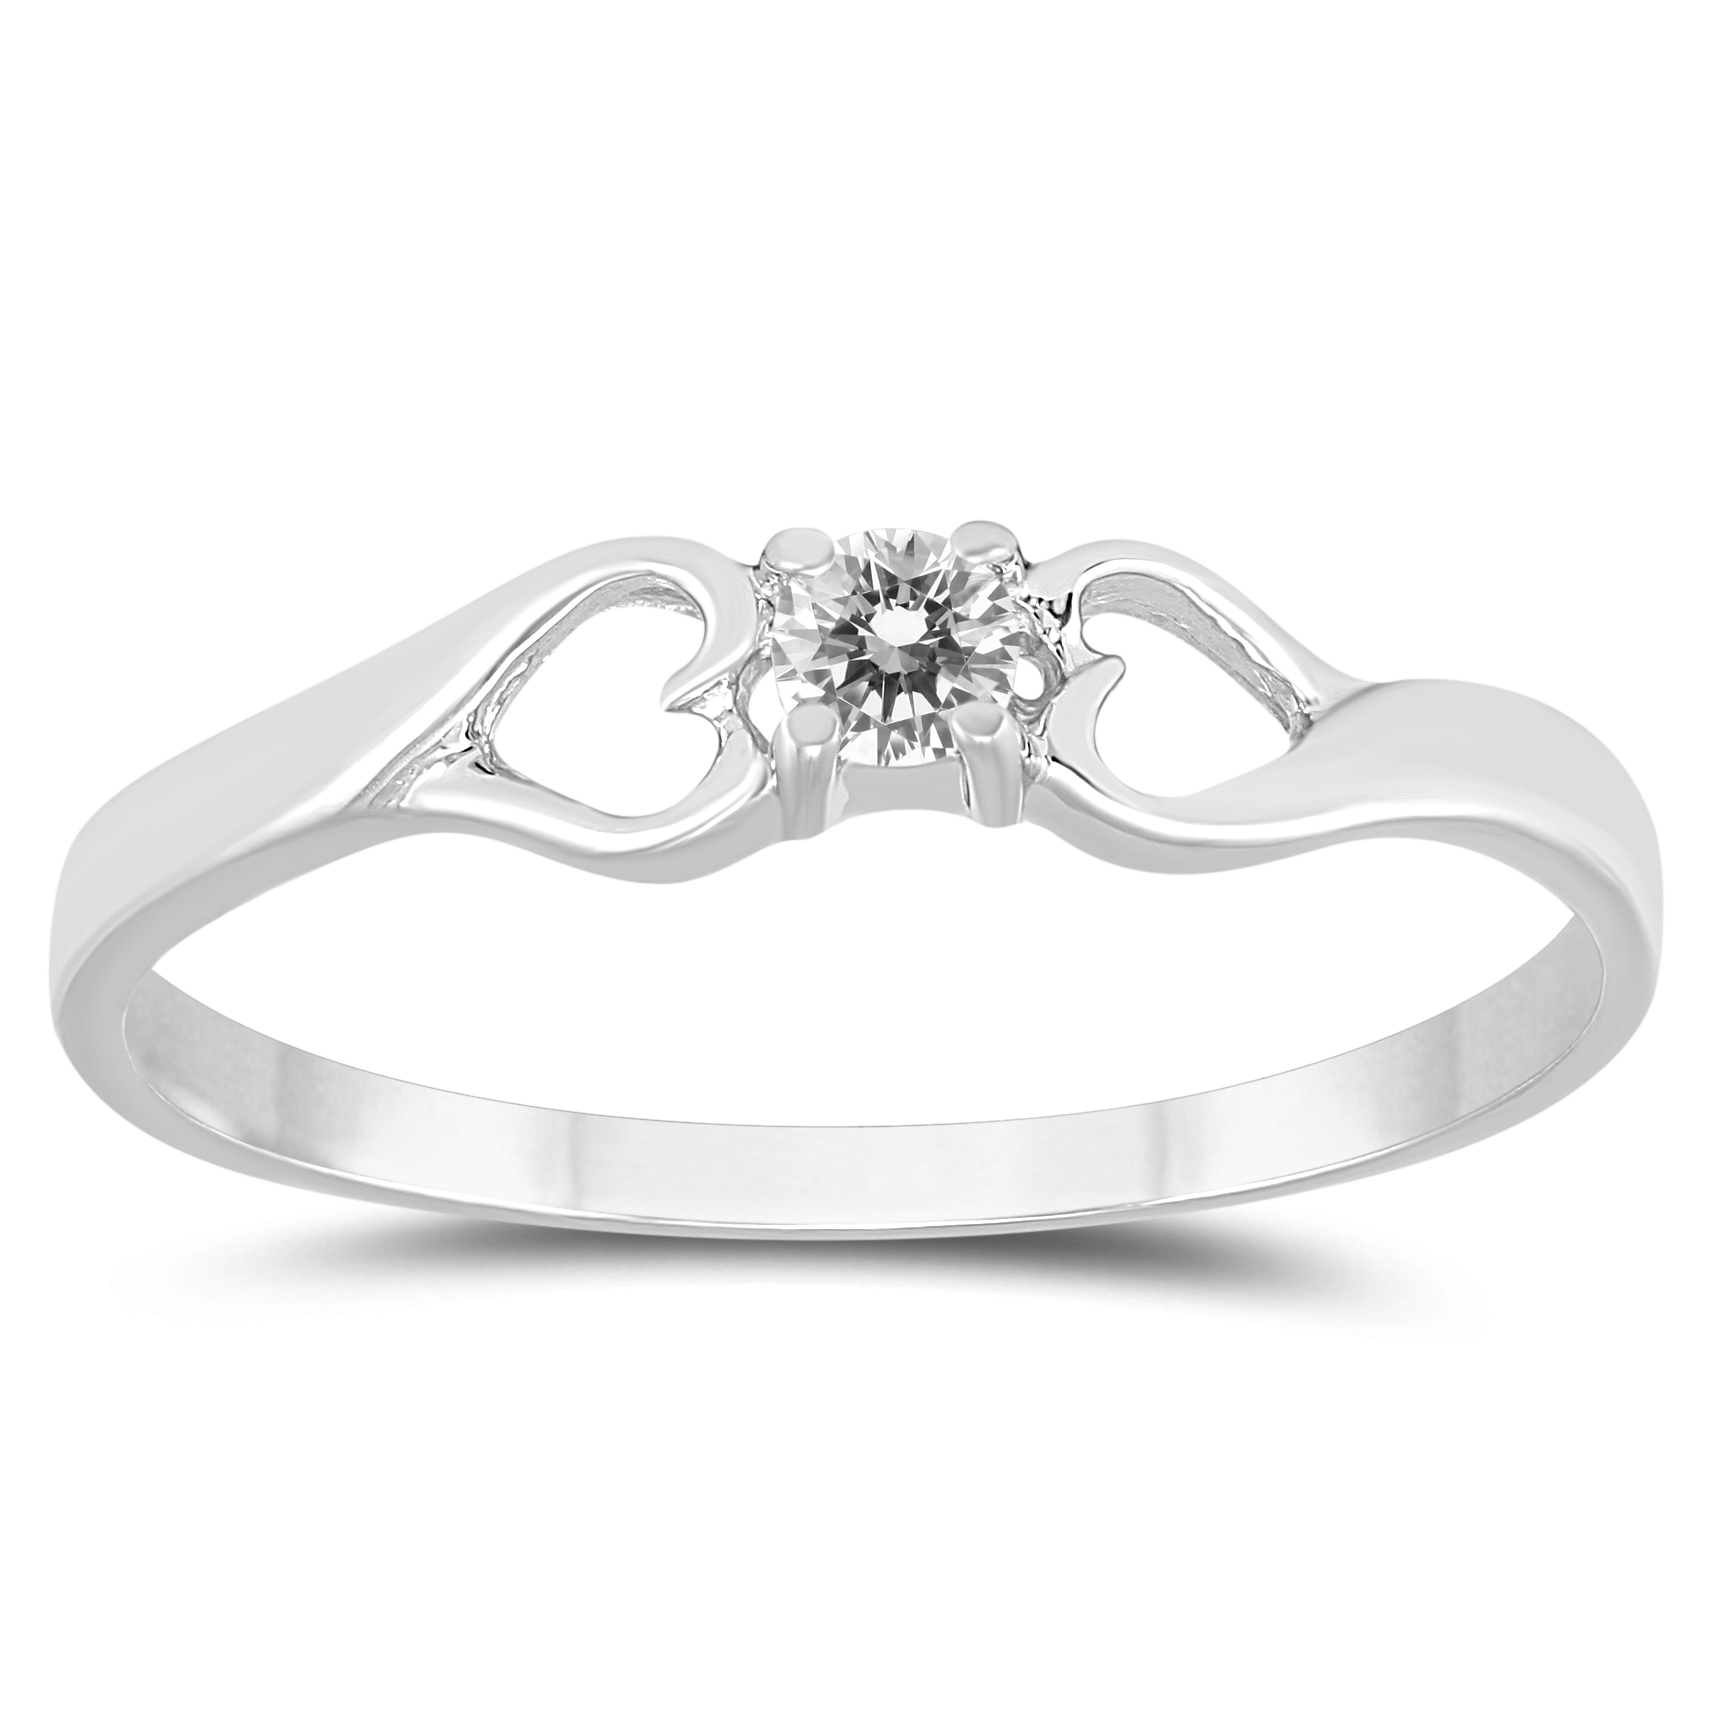 1/10 Carat TW Diamond Heart Promise Ring in 10K White Gold